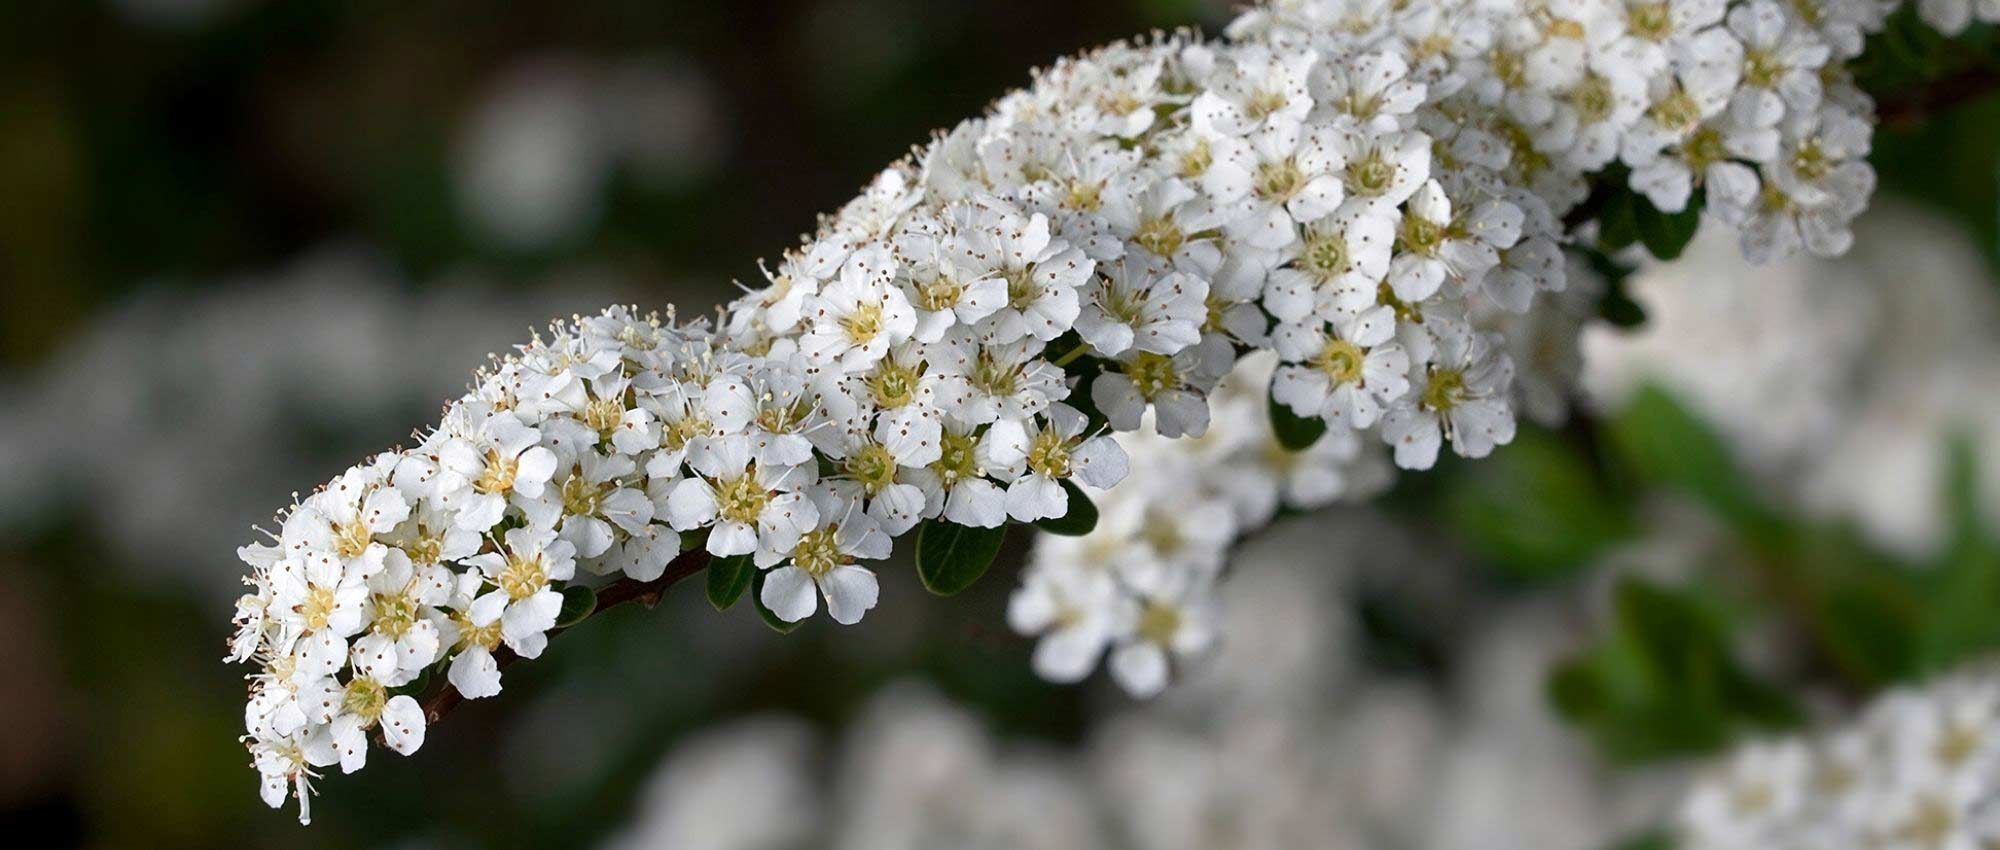 Arbre fleurs blanches